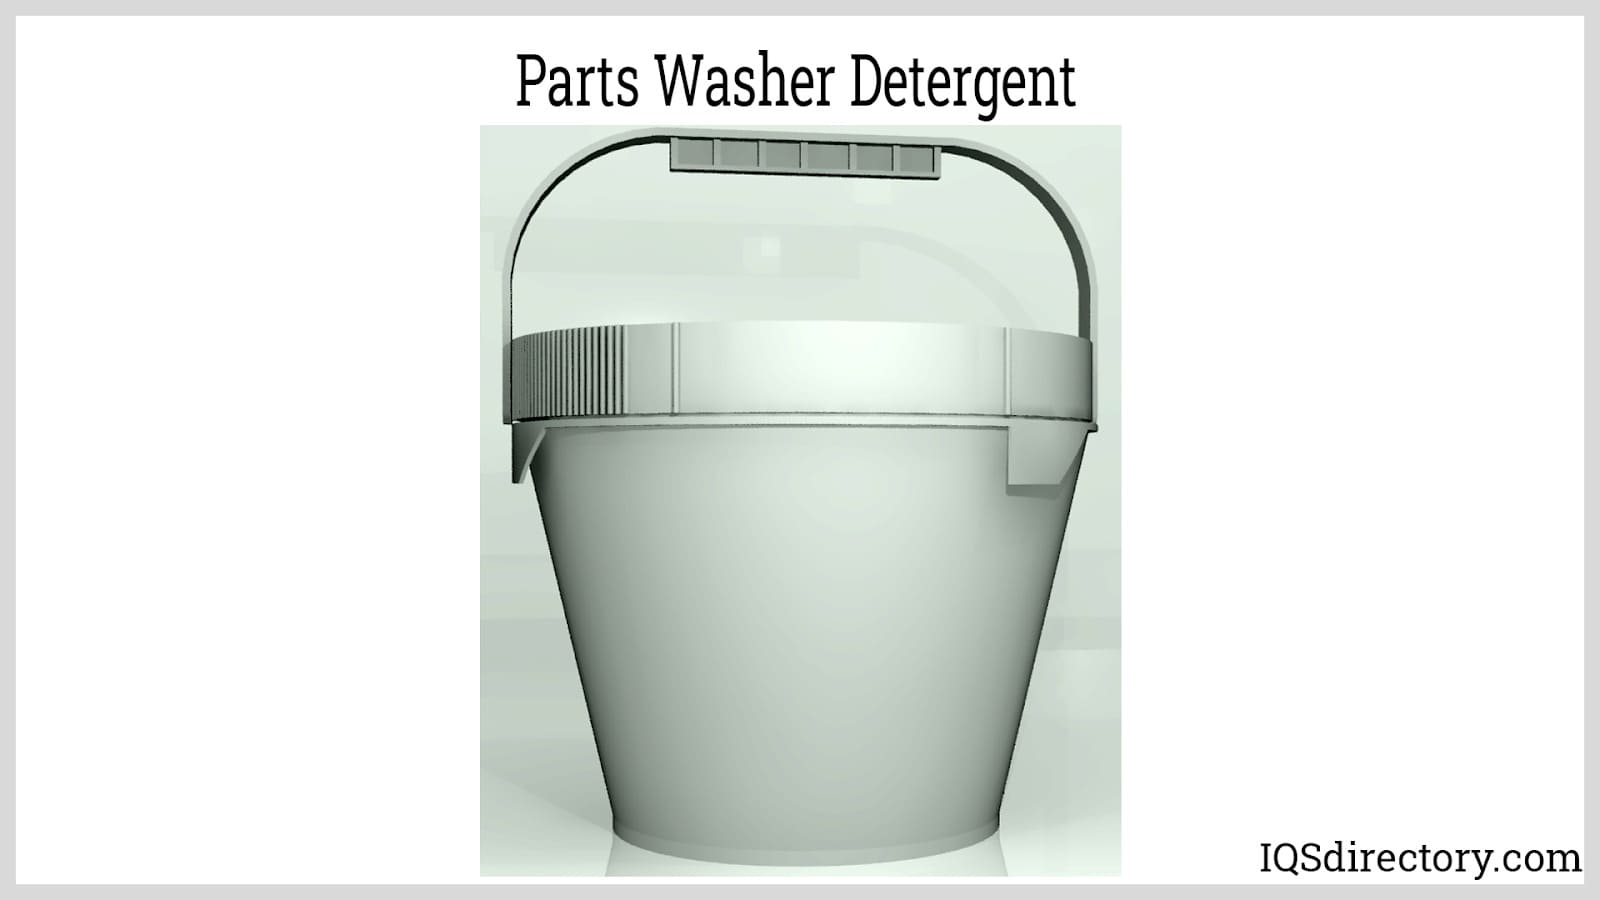 Parts Washer Detergent